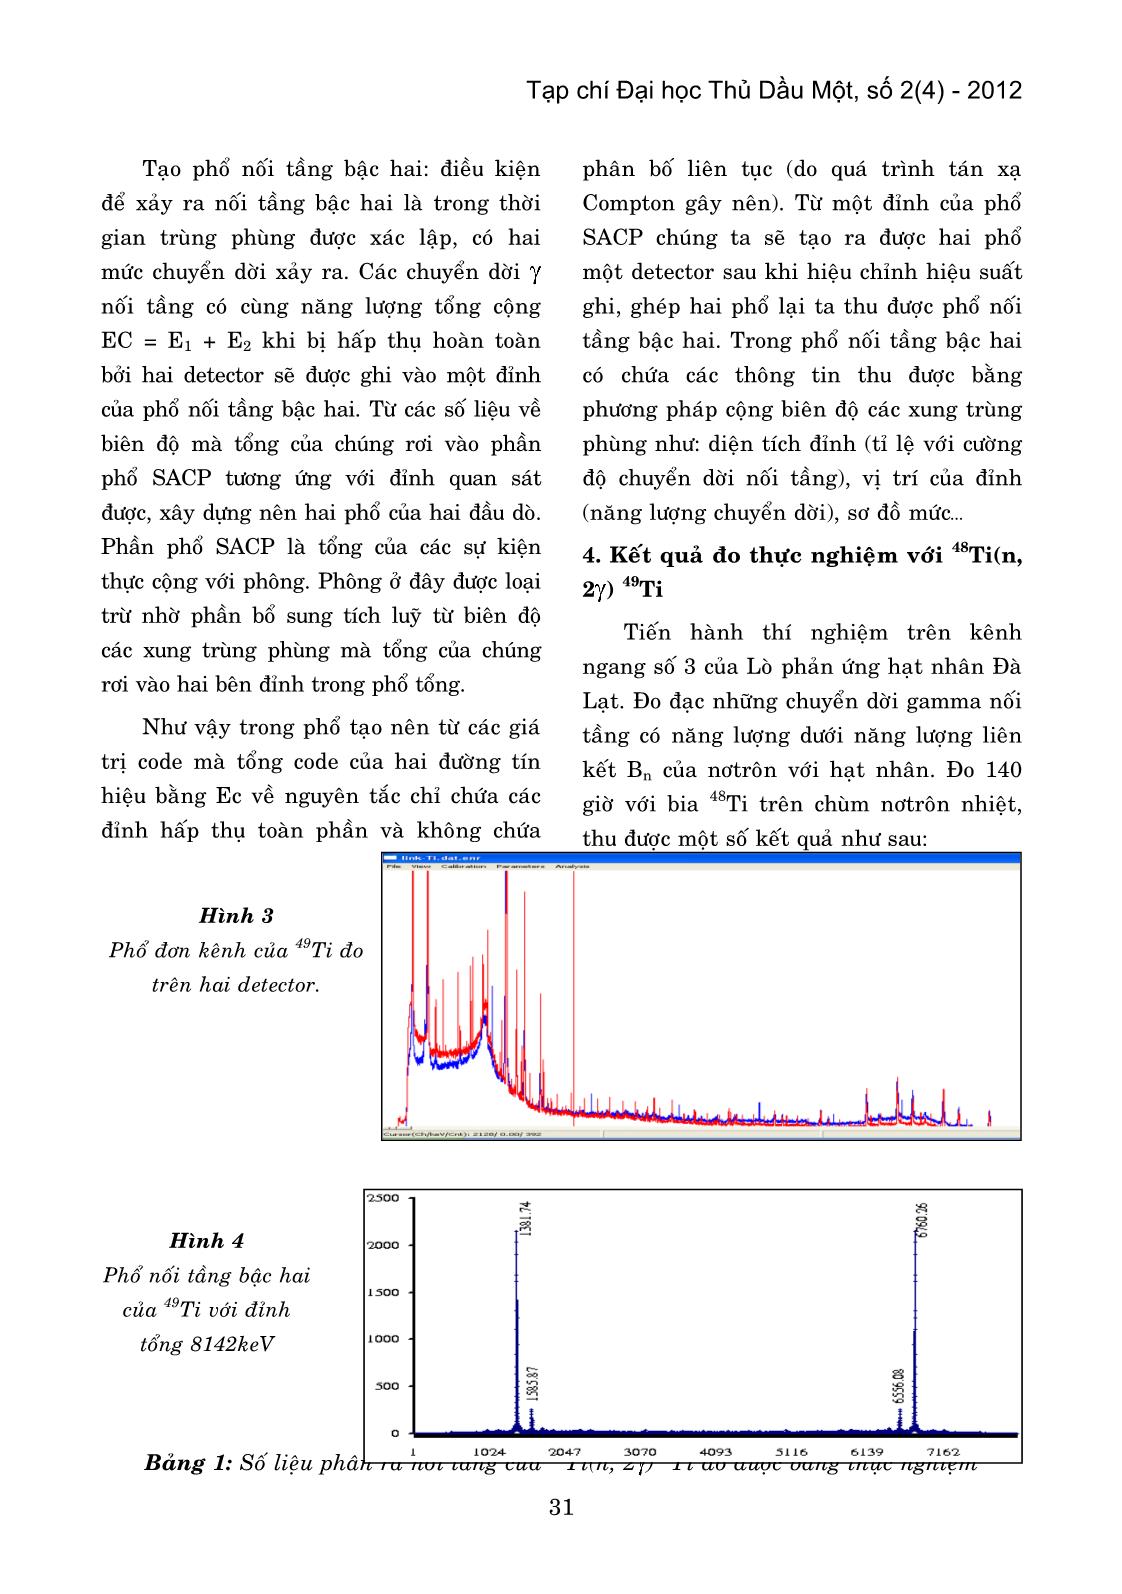 Phương pháp đo cường độ chuyển dời Gamma nối tầng bằng thực nghiệm tại viện nghiên cứu hạt nhân Đà Lạt trang 4